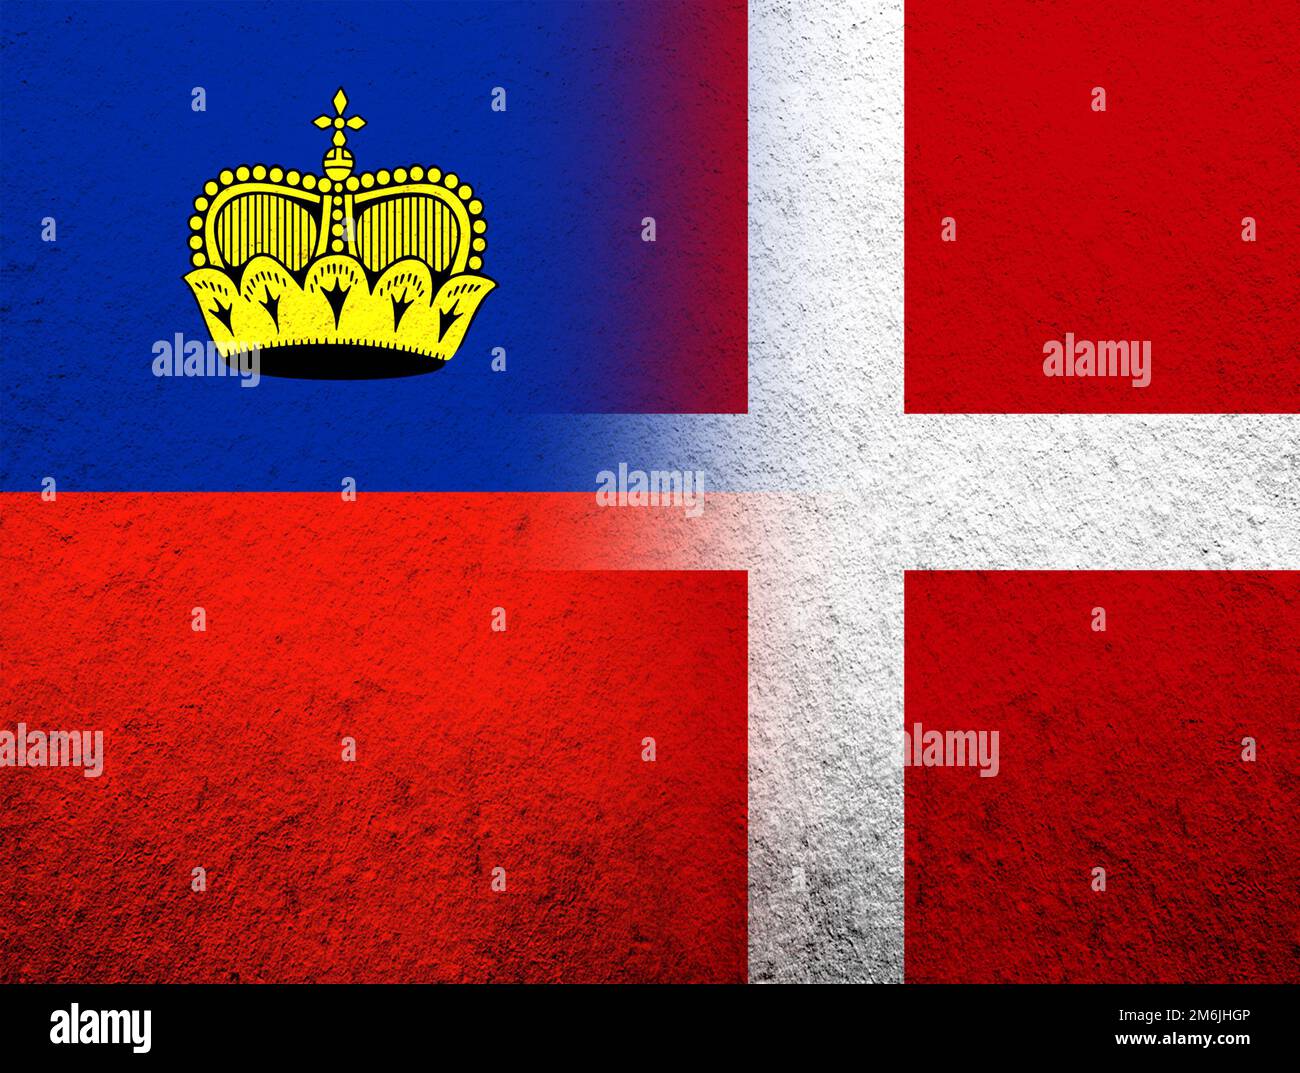 Le Royaume de Danemark drapeau national avec la Principauté de Liechtenstein drapeau national. Grunge l'arrière-plan Banque D'Images